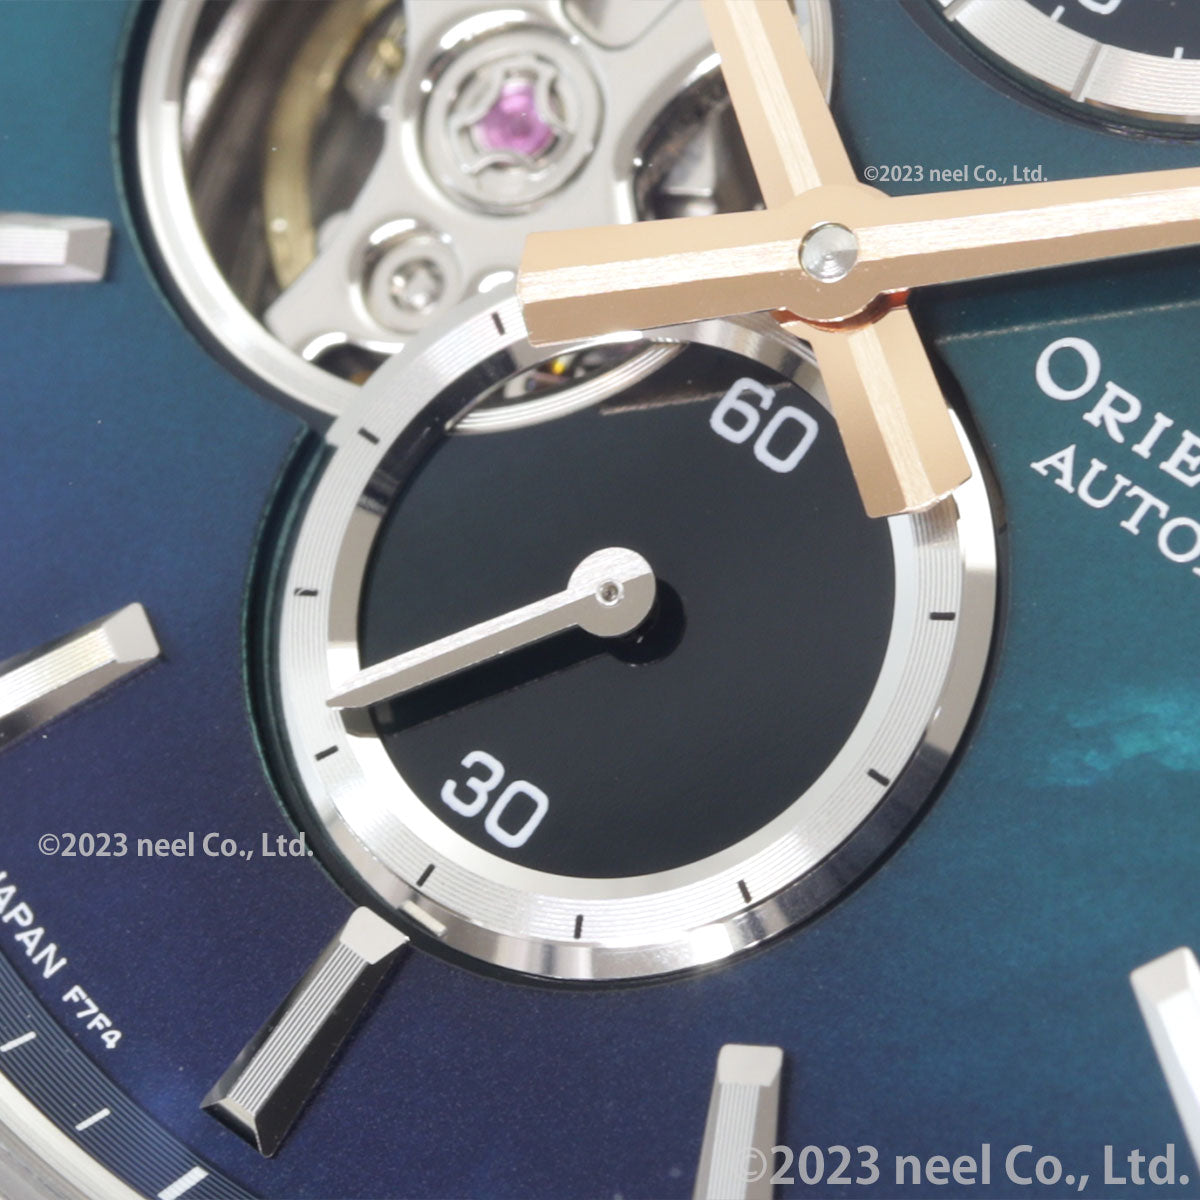 オリエントスター ORIENT STAR M34 F7 セミスケルトン 腕時計 メンズ 自動巻き 機械式 RK-BY0001A